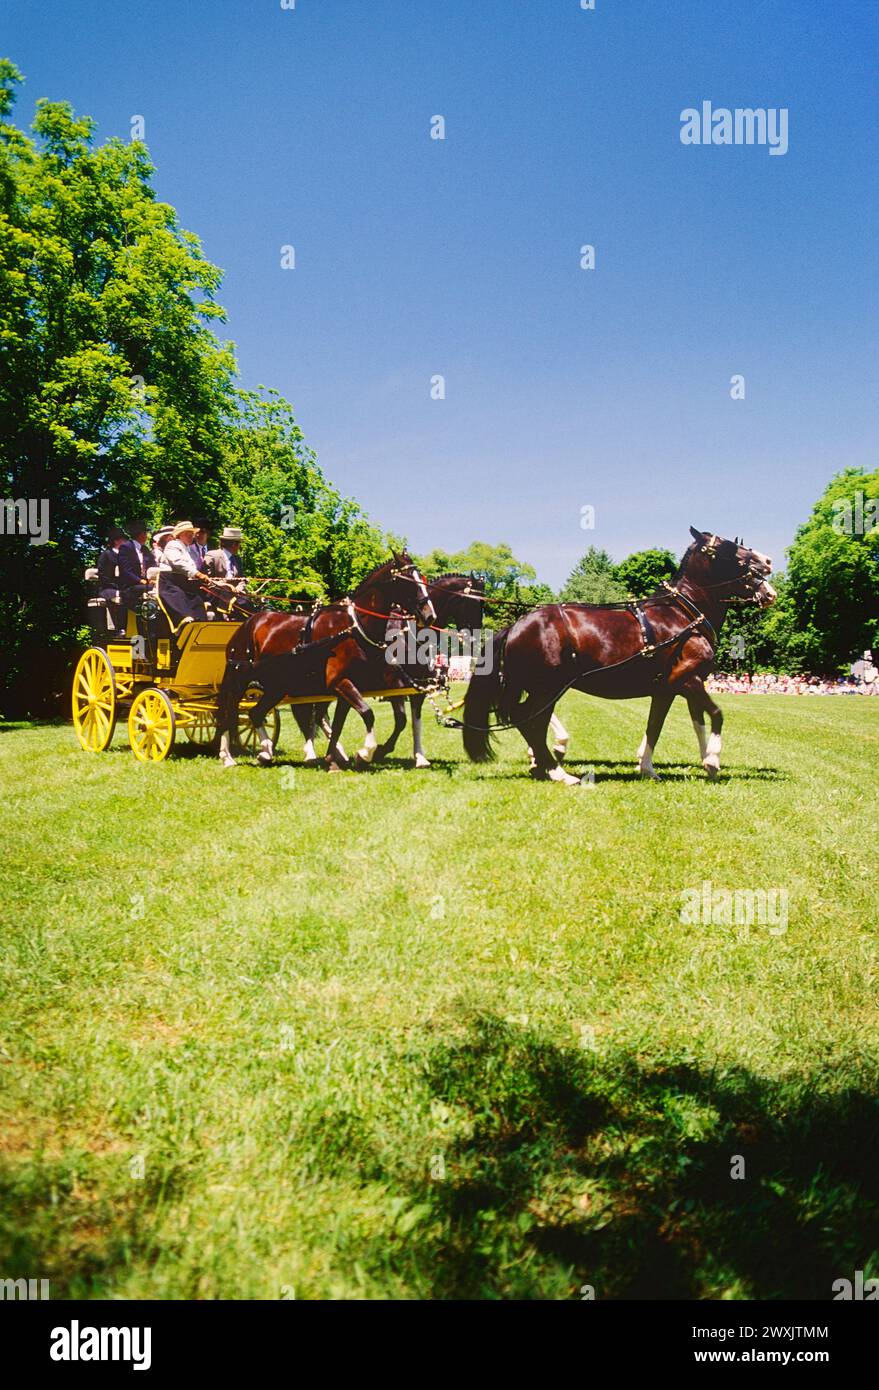 Devon Horse Show & Country Fair; Devon; Pennsylvania; Stati Uniti. Il più antico (1896) spettacolo all'aperto negli Stati Uniti. Foto Stock